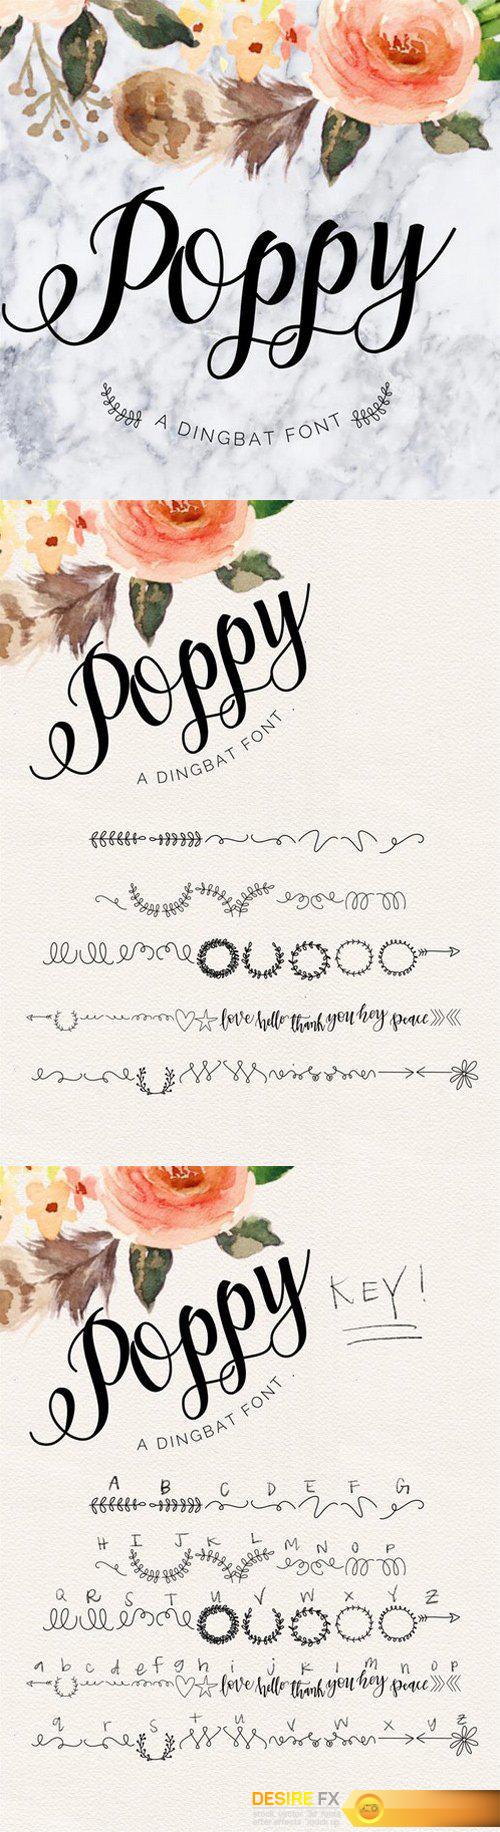 Poppy Script Font